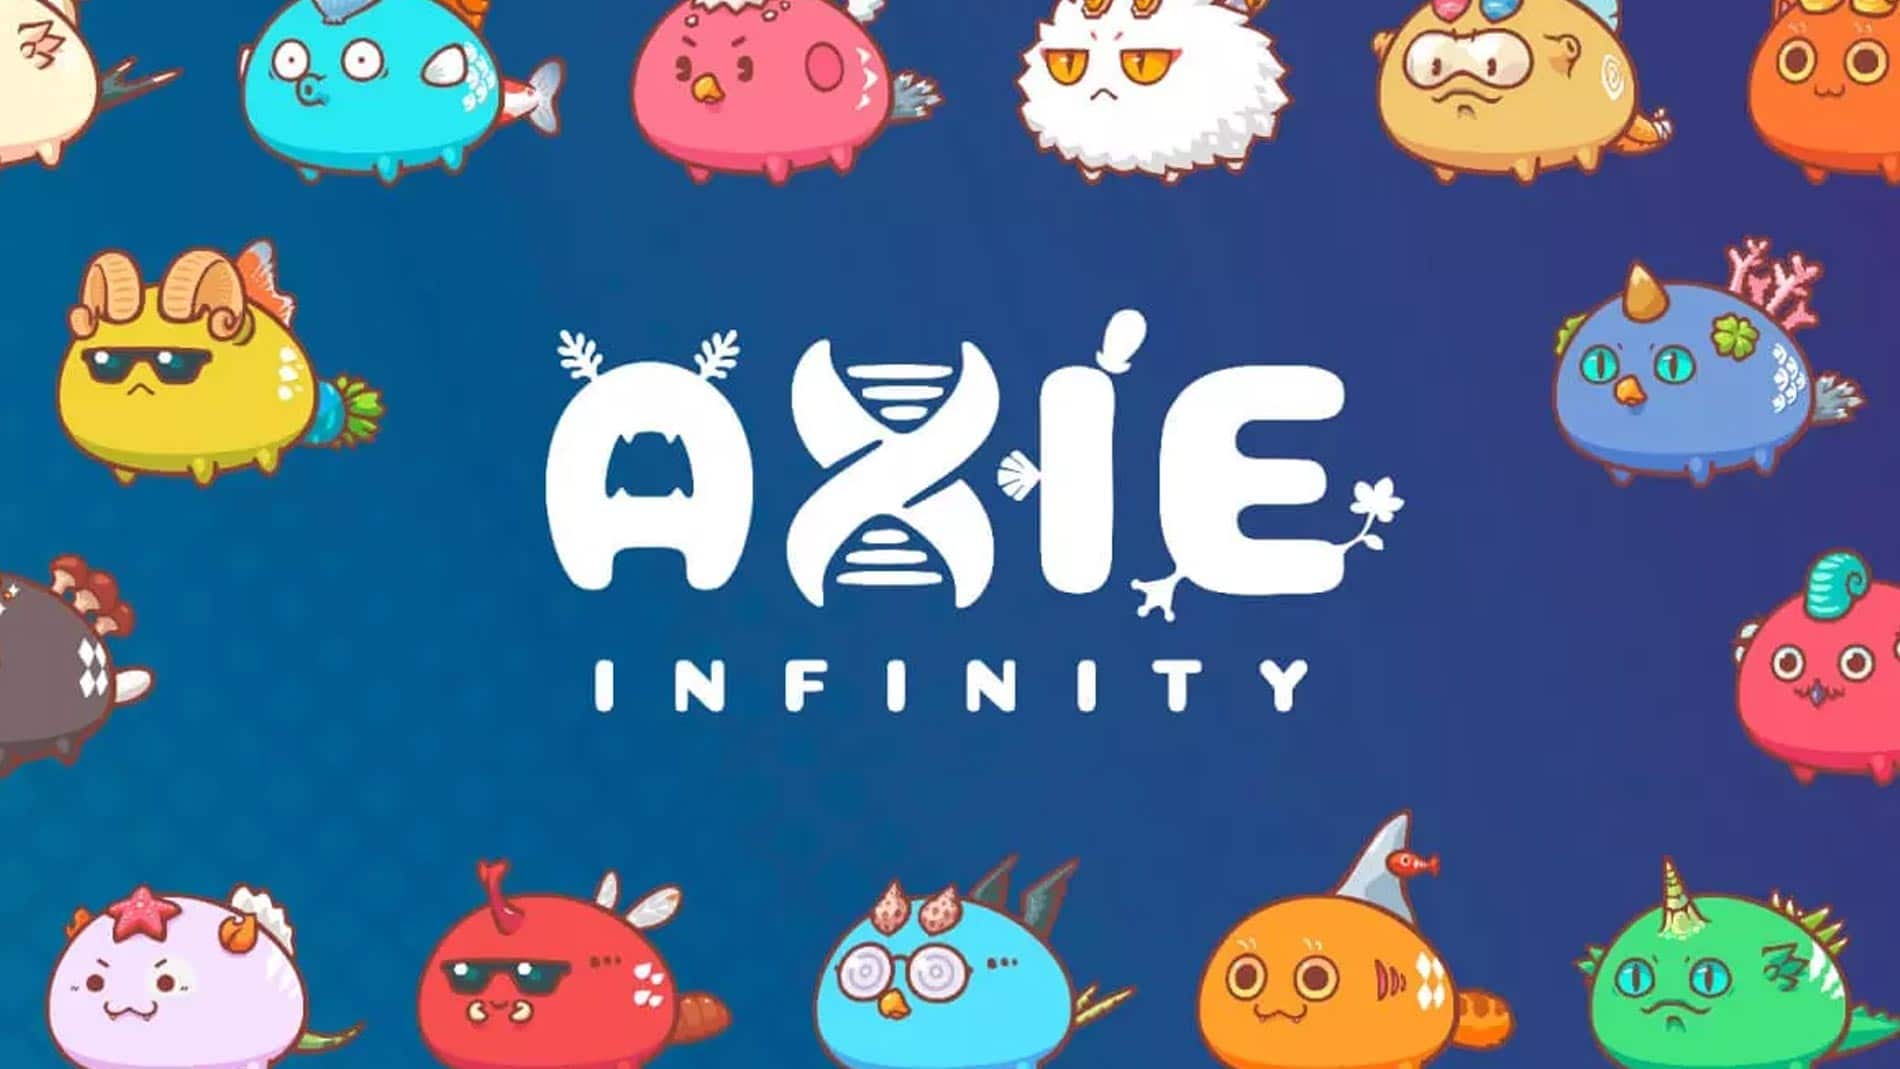 Axie Infinity viraliza, número de usuários explode e criptomoeda SLP dobra de preço